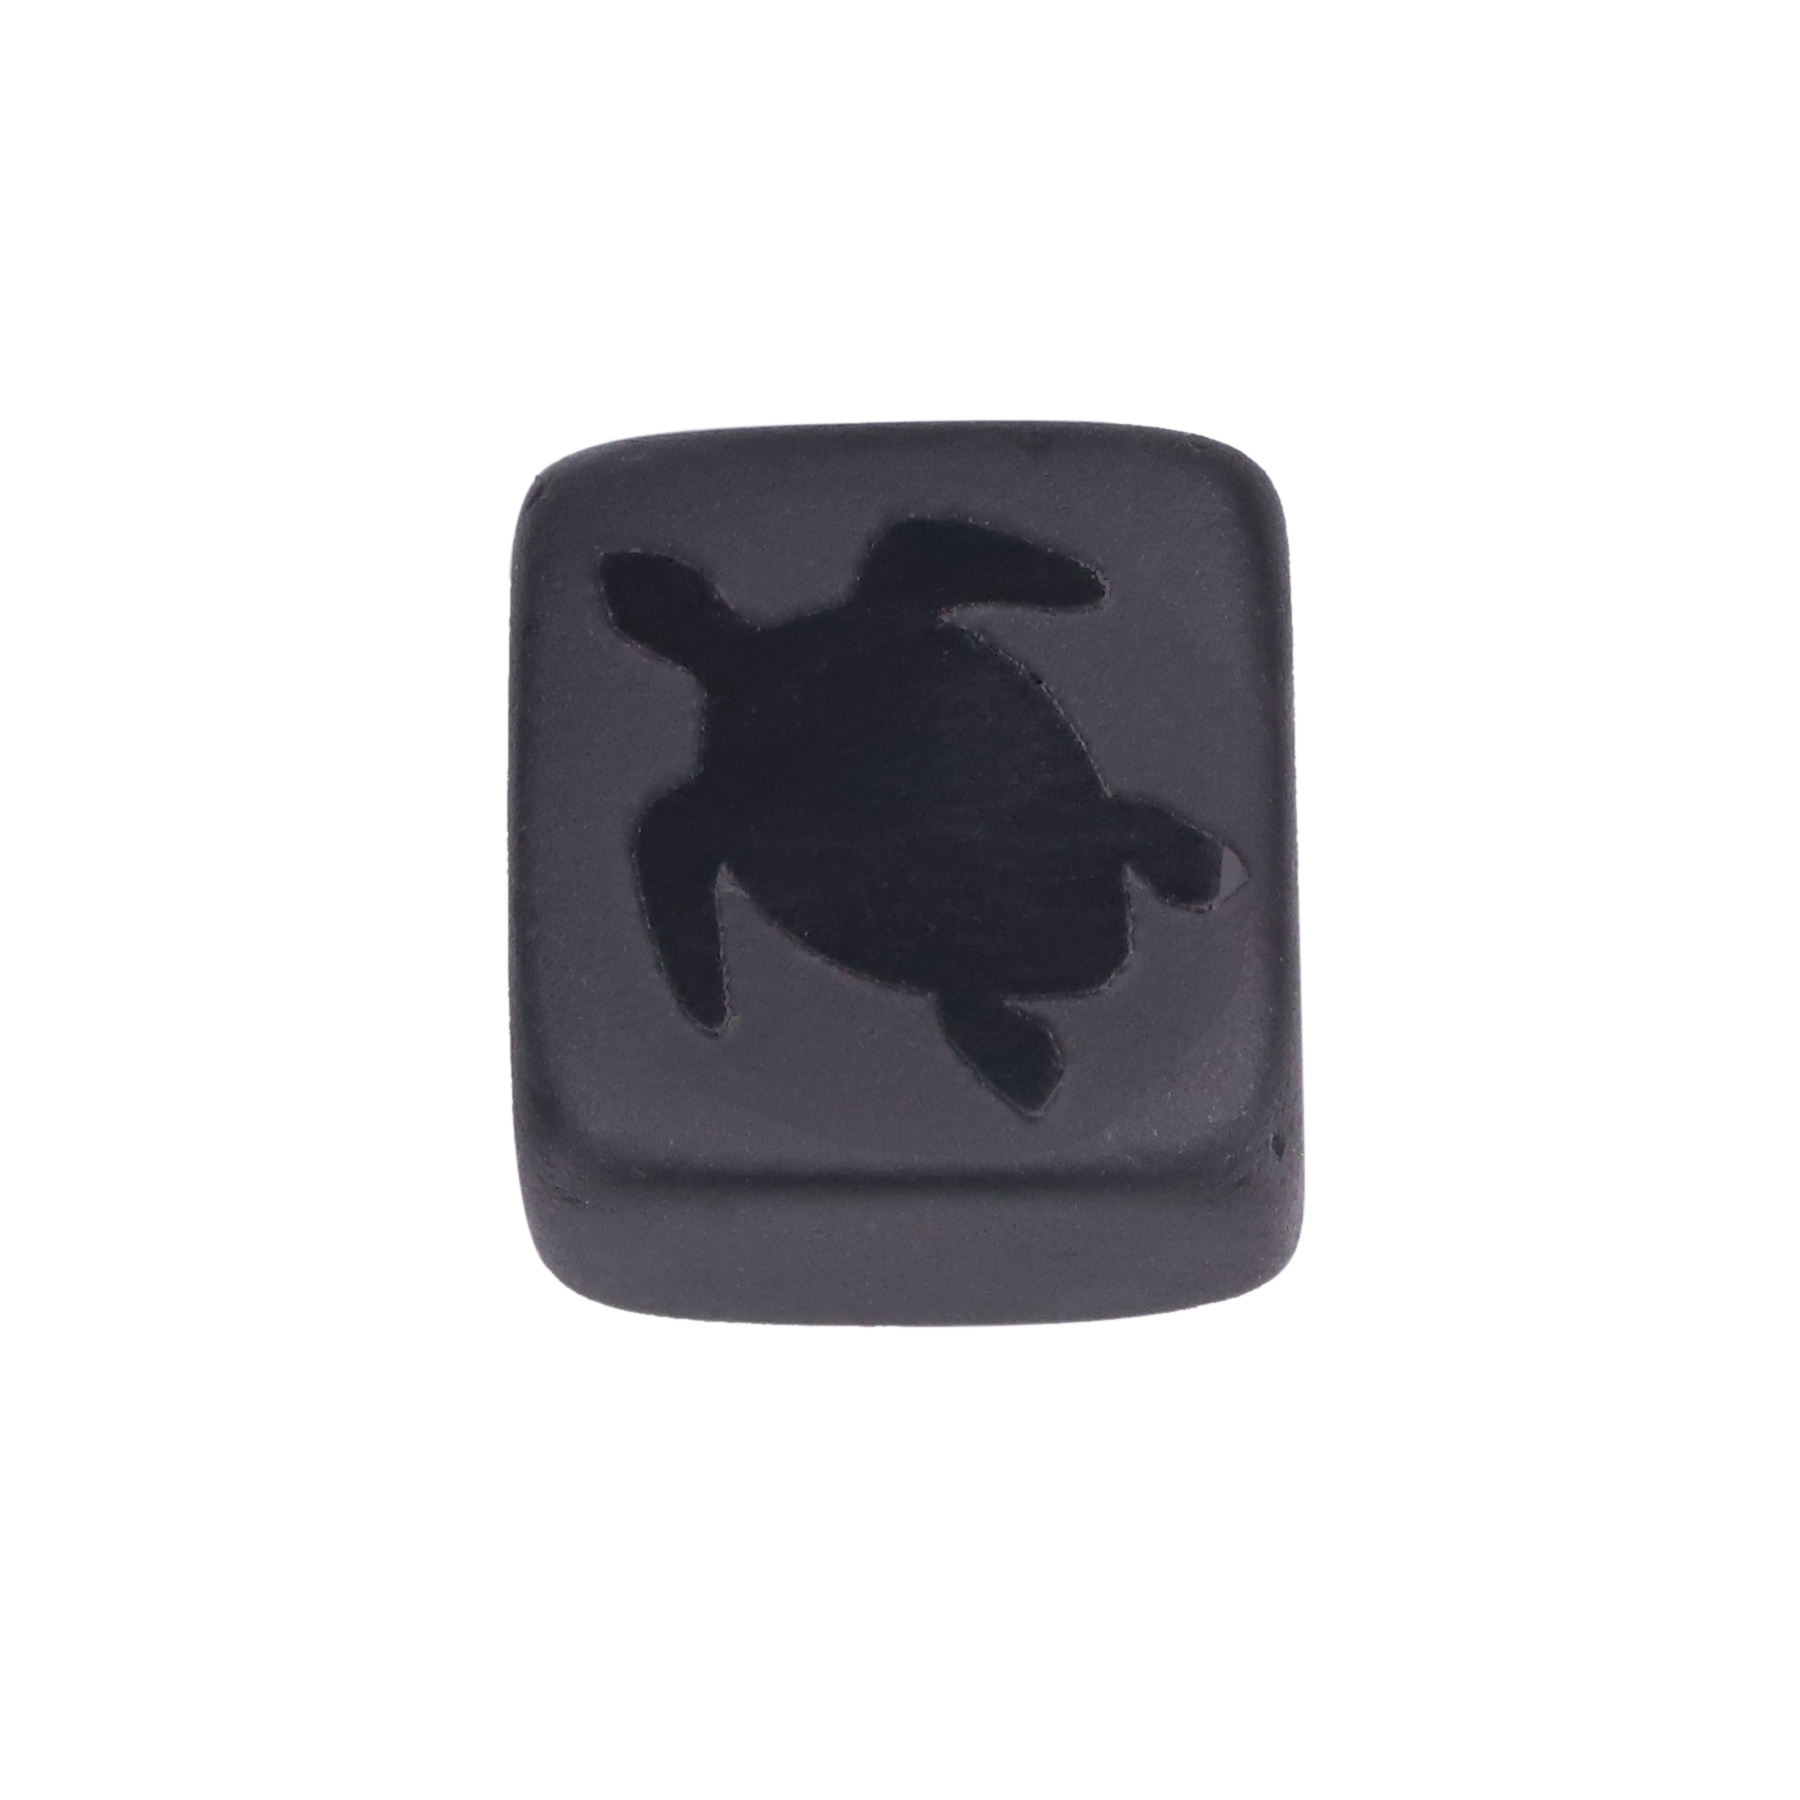 2:turtle pattern